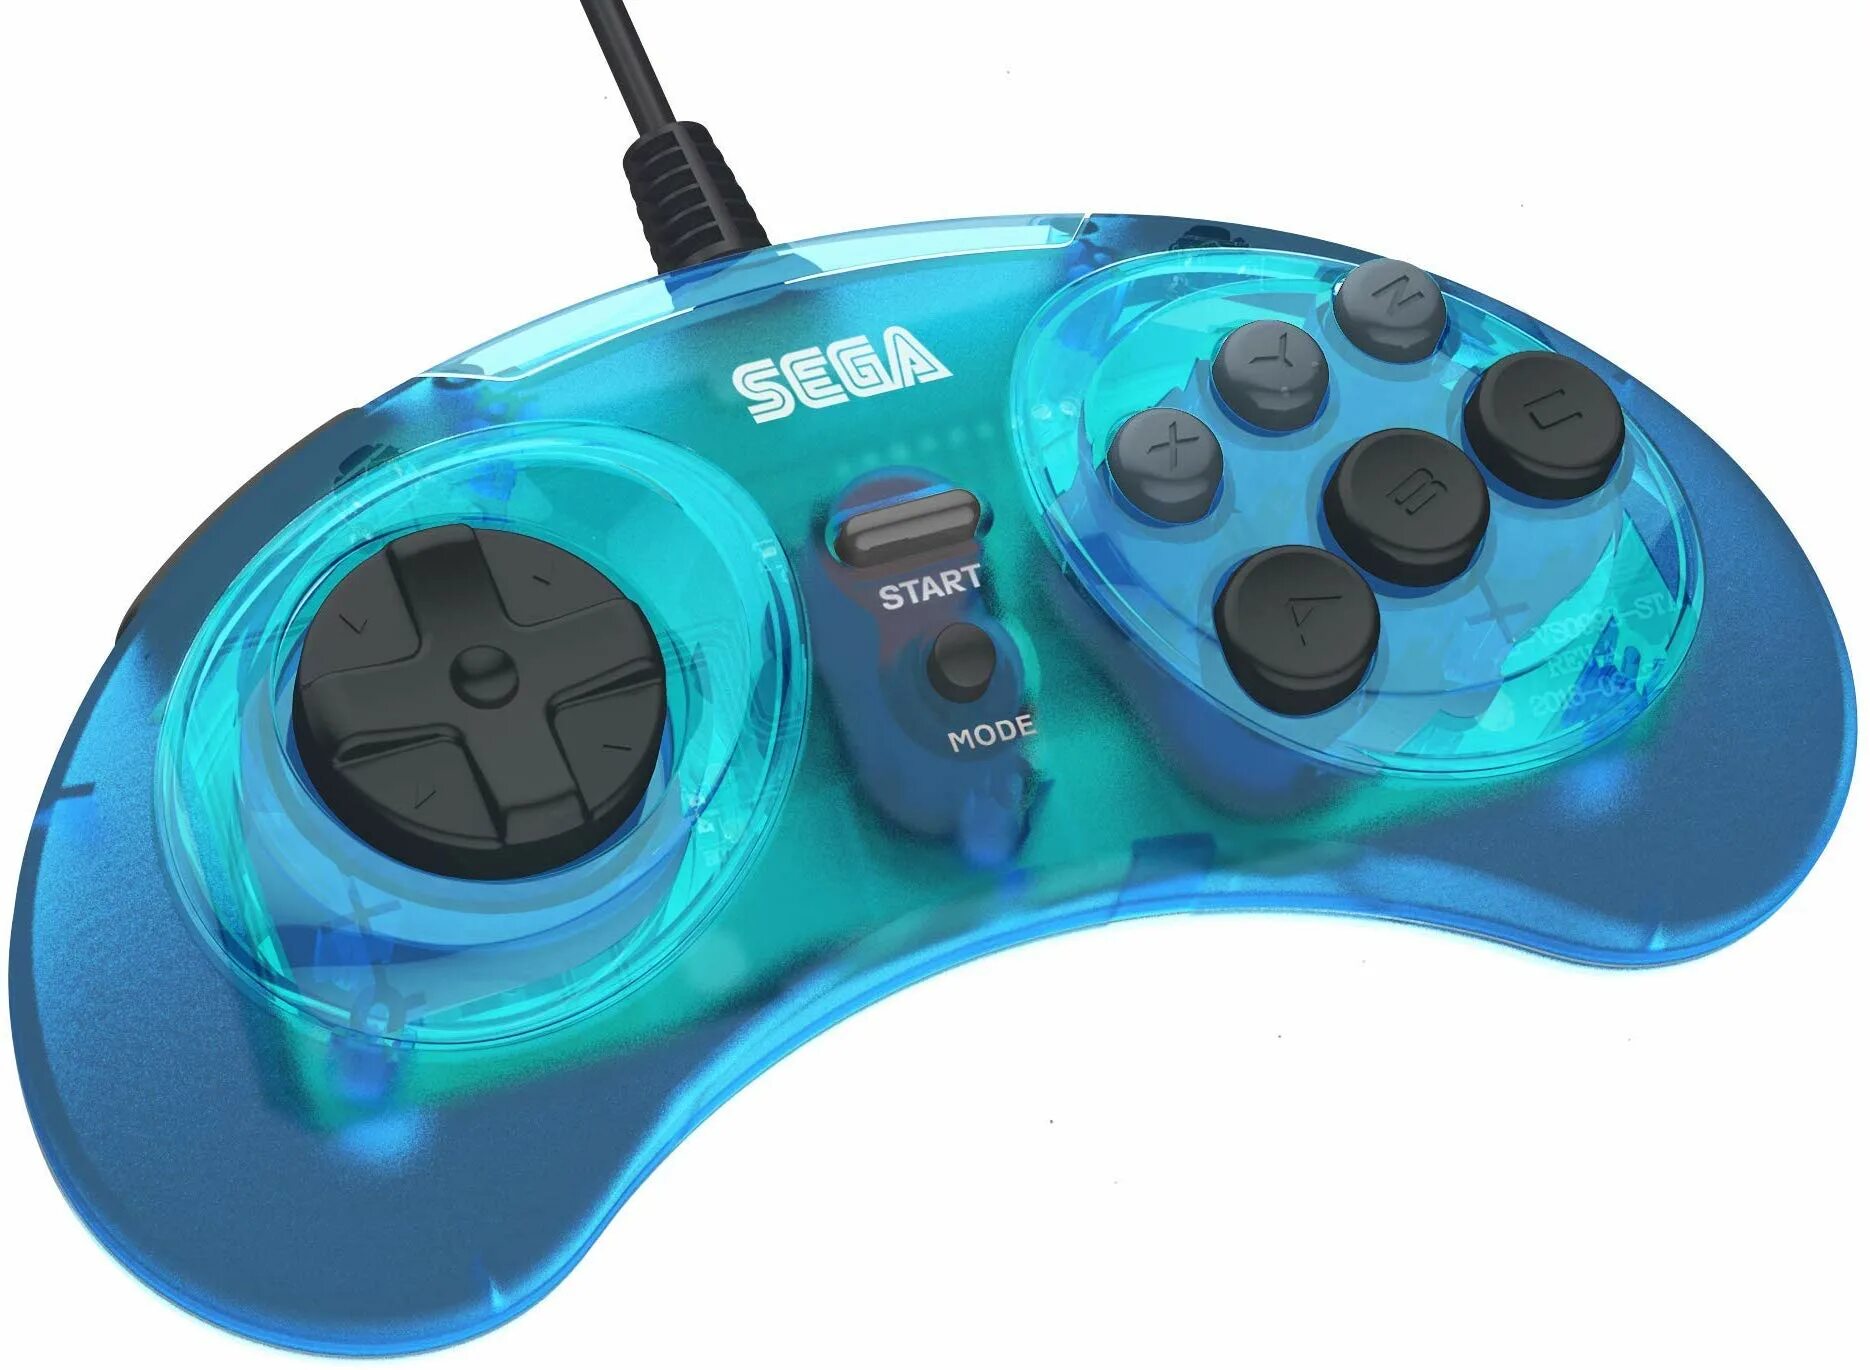 Джойстик голубой. Sega Mega Drive 6 button Controller. Sega Saturn джойстик. Джойстик сега Genesis ПК. Джойстик Sega Mega Drive USB.